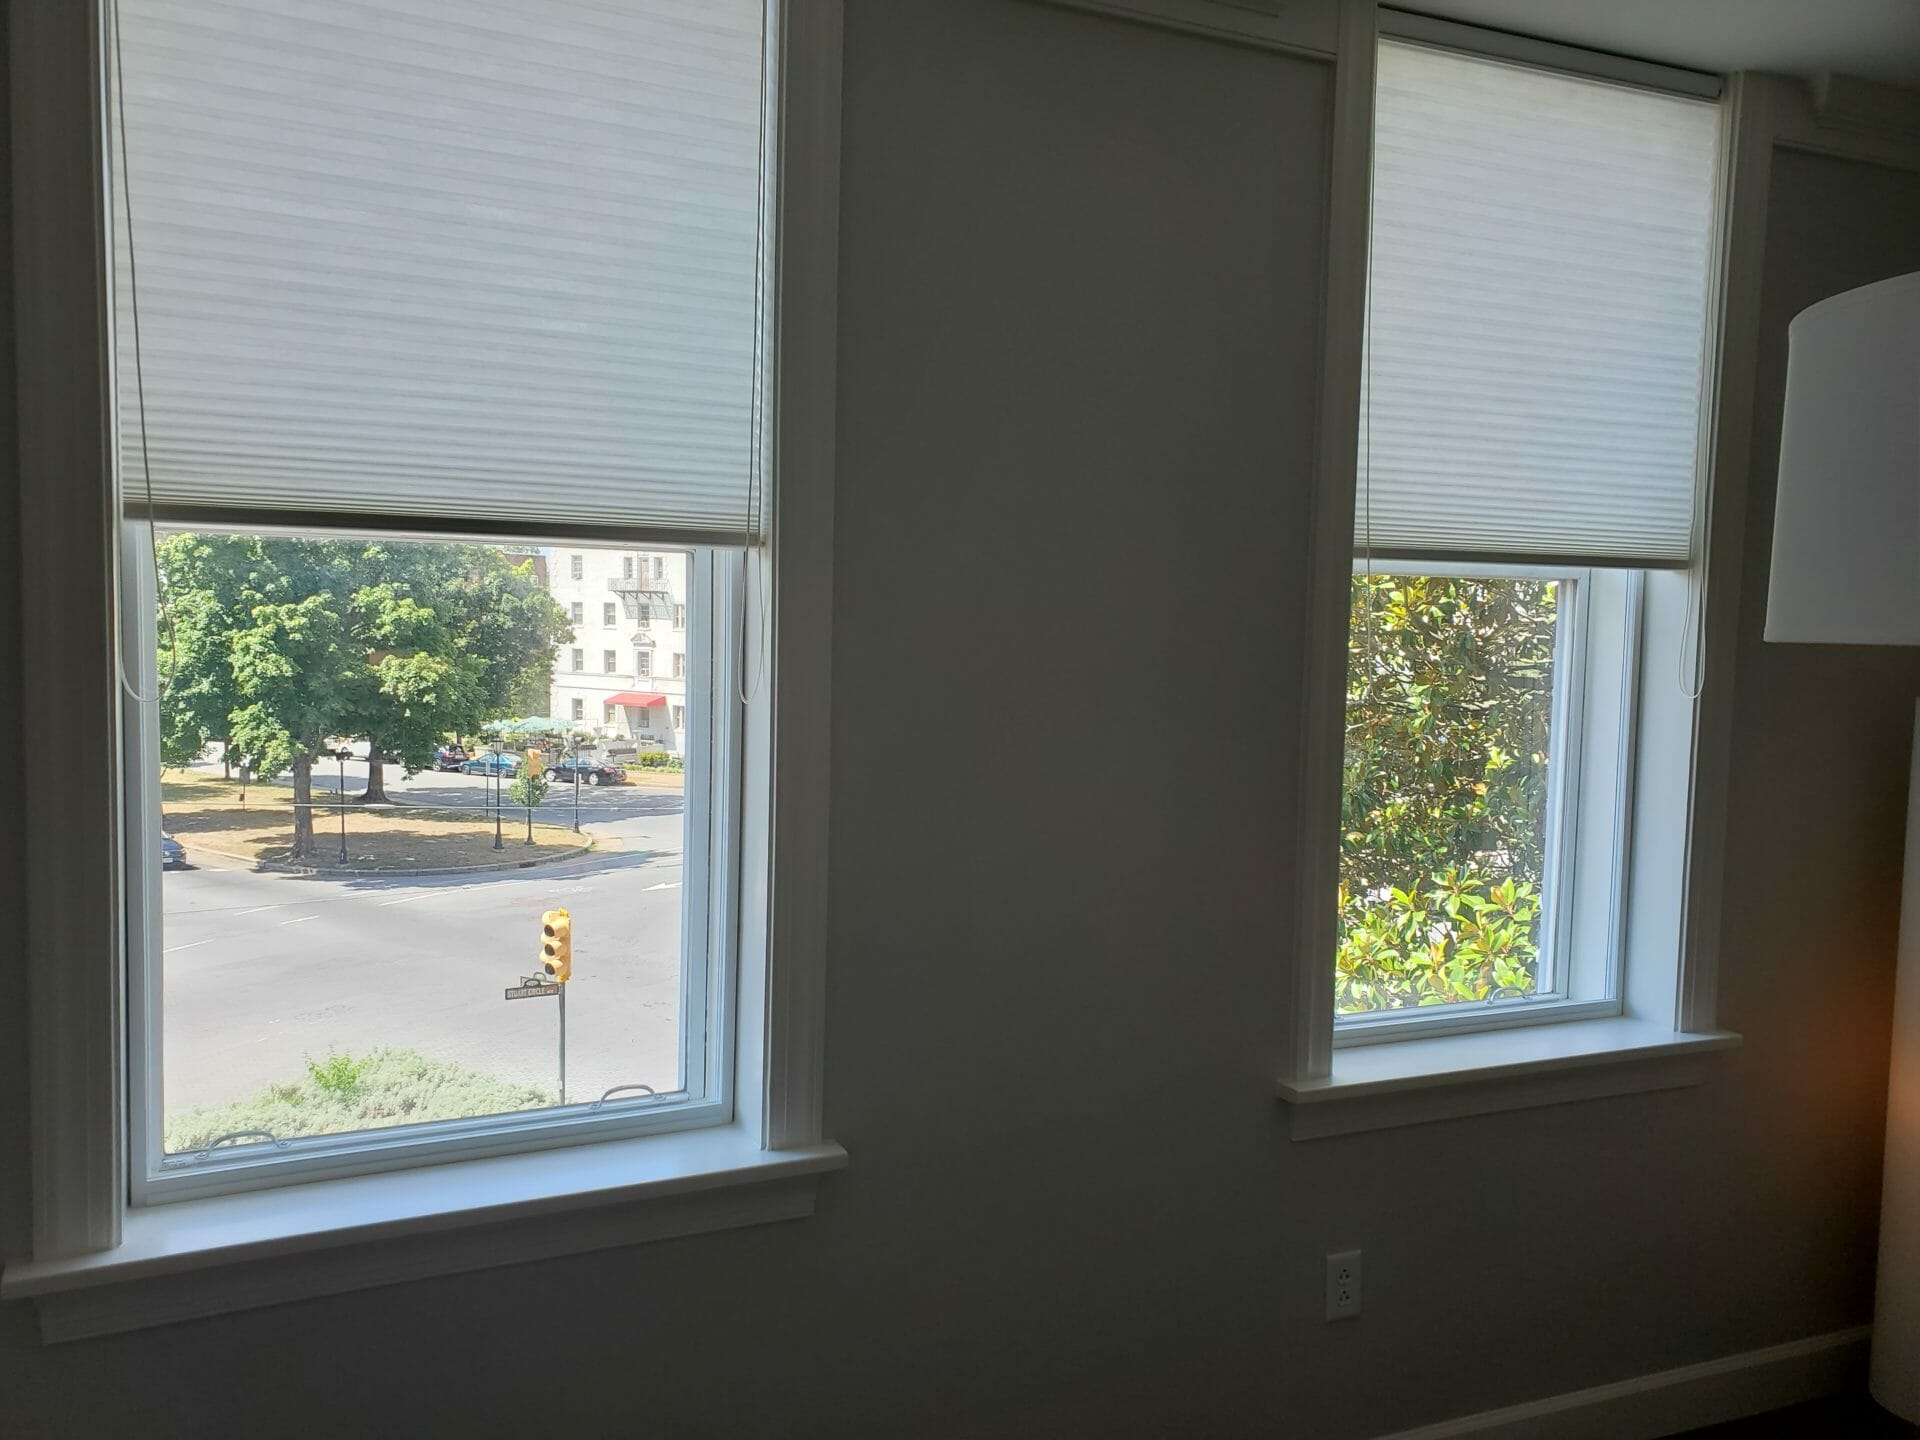 ¿Cuáles son los beneficios de sellar las ventanas para mantener alejados a los insectos?